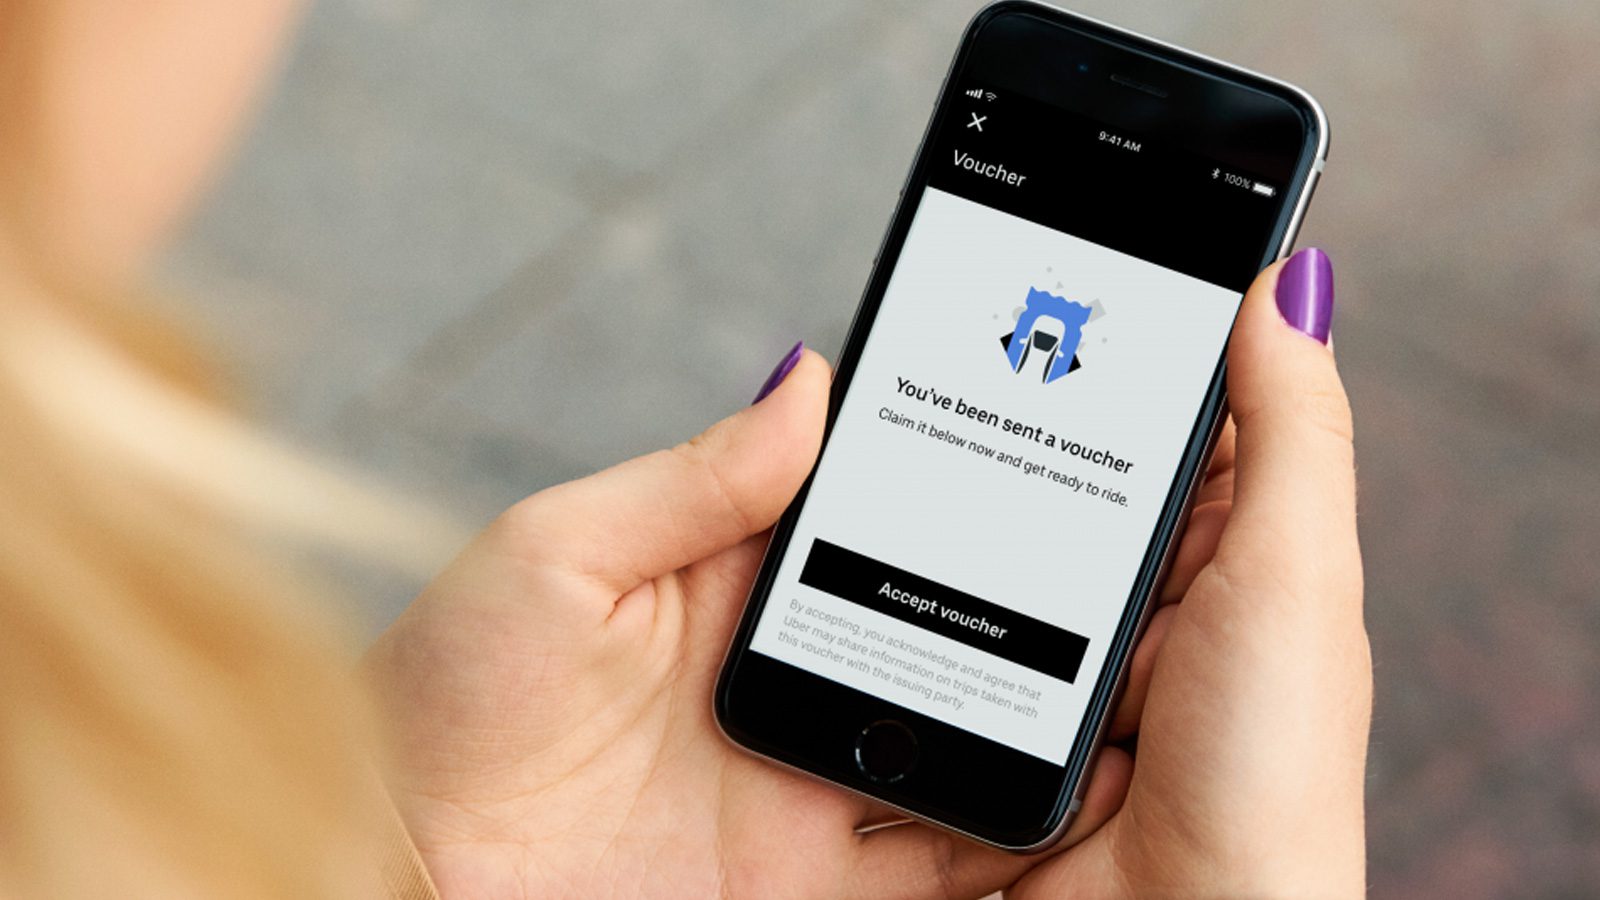 Ваучеры Uber запущены для предприятий для предоставления бесплатных услуг